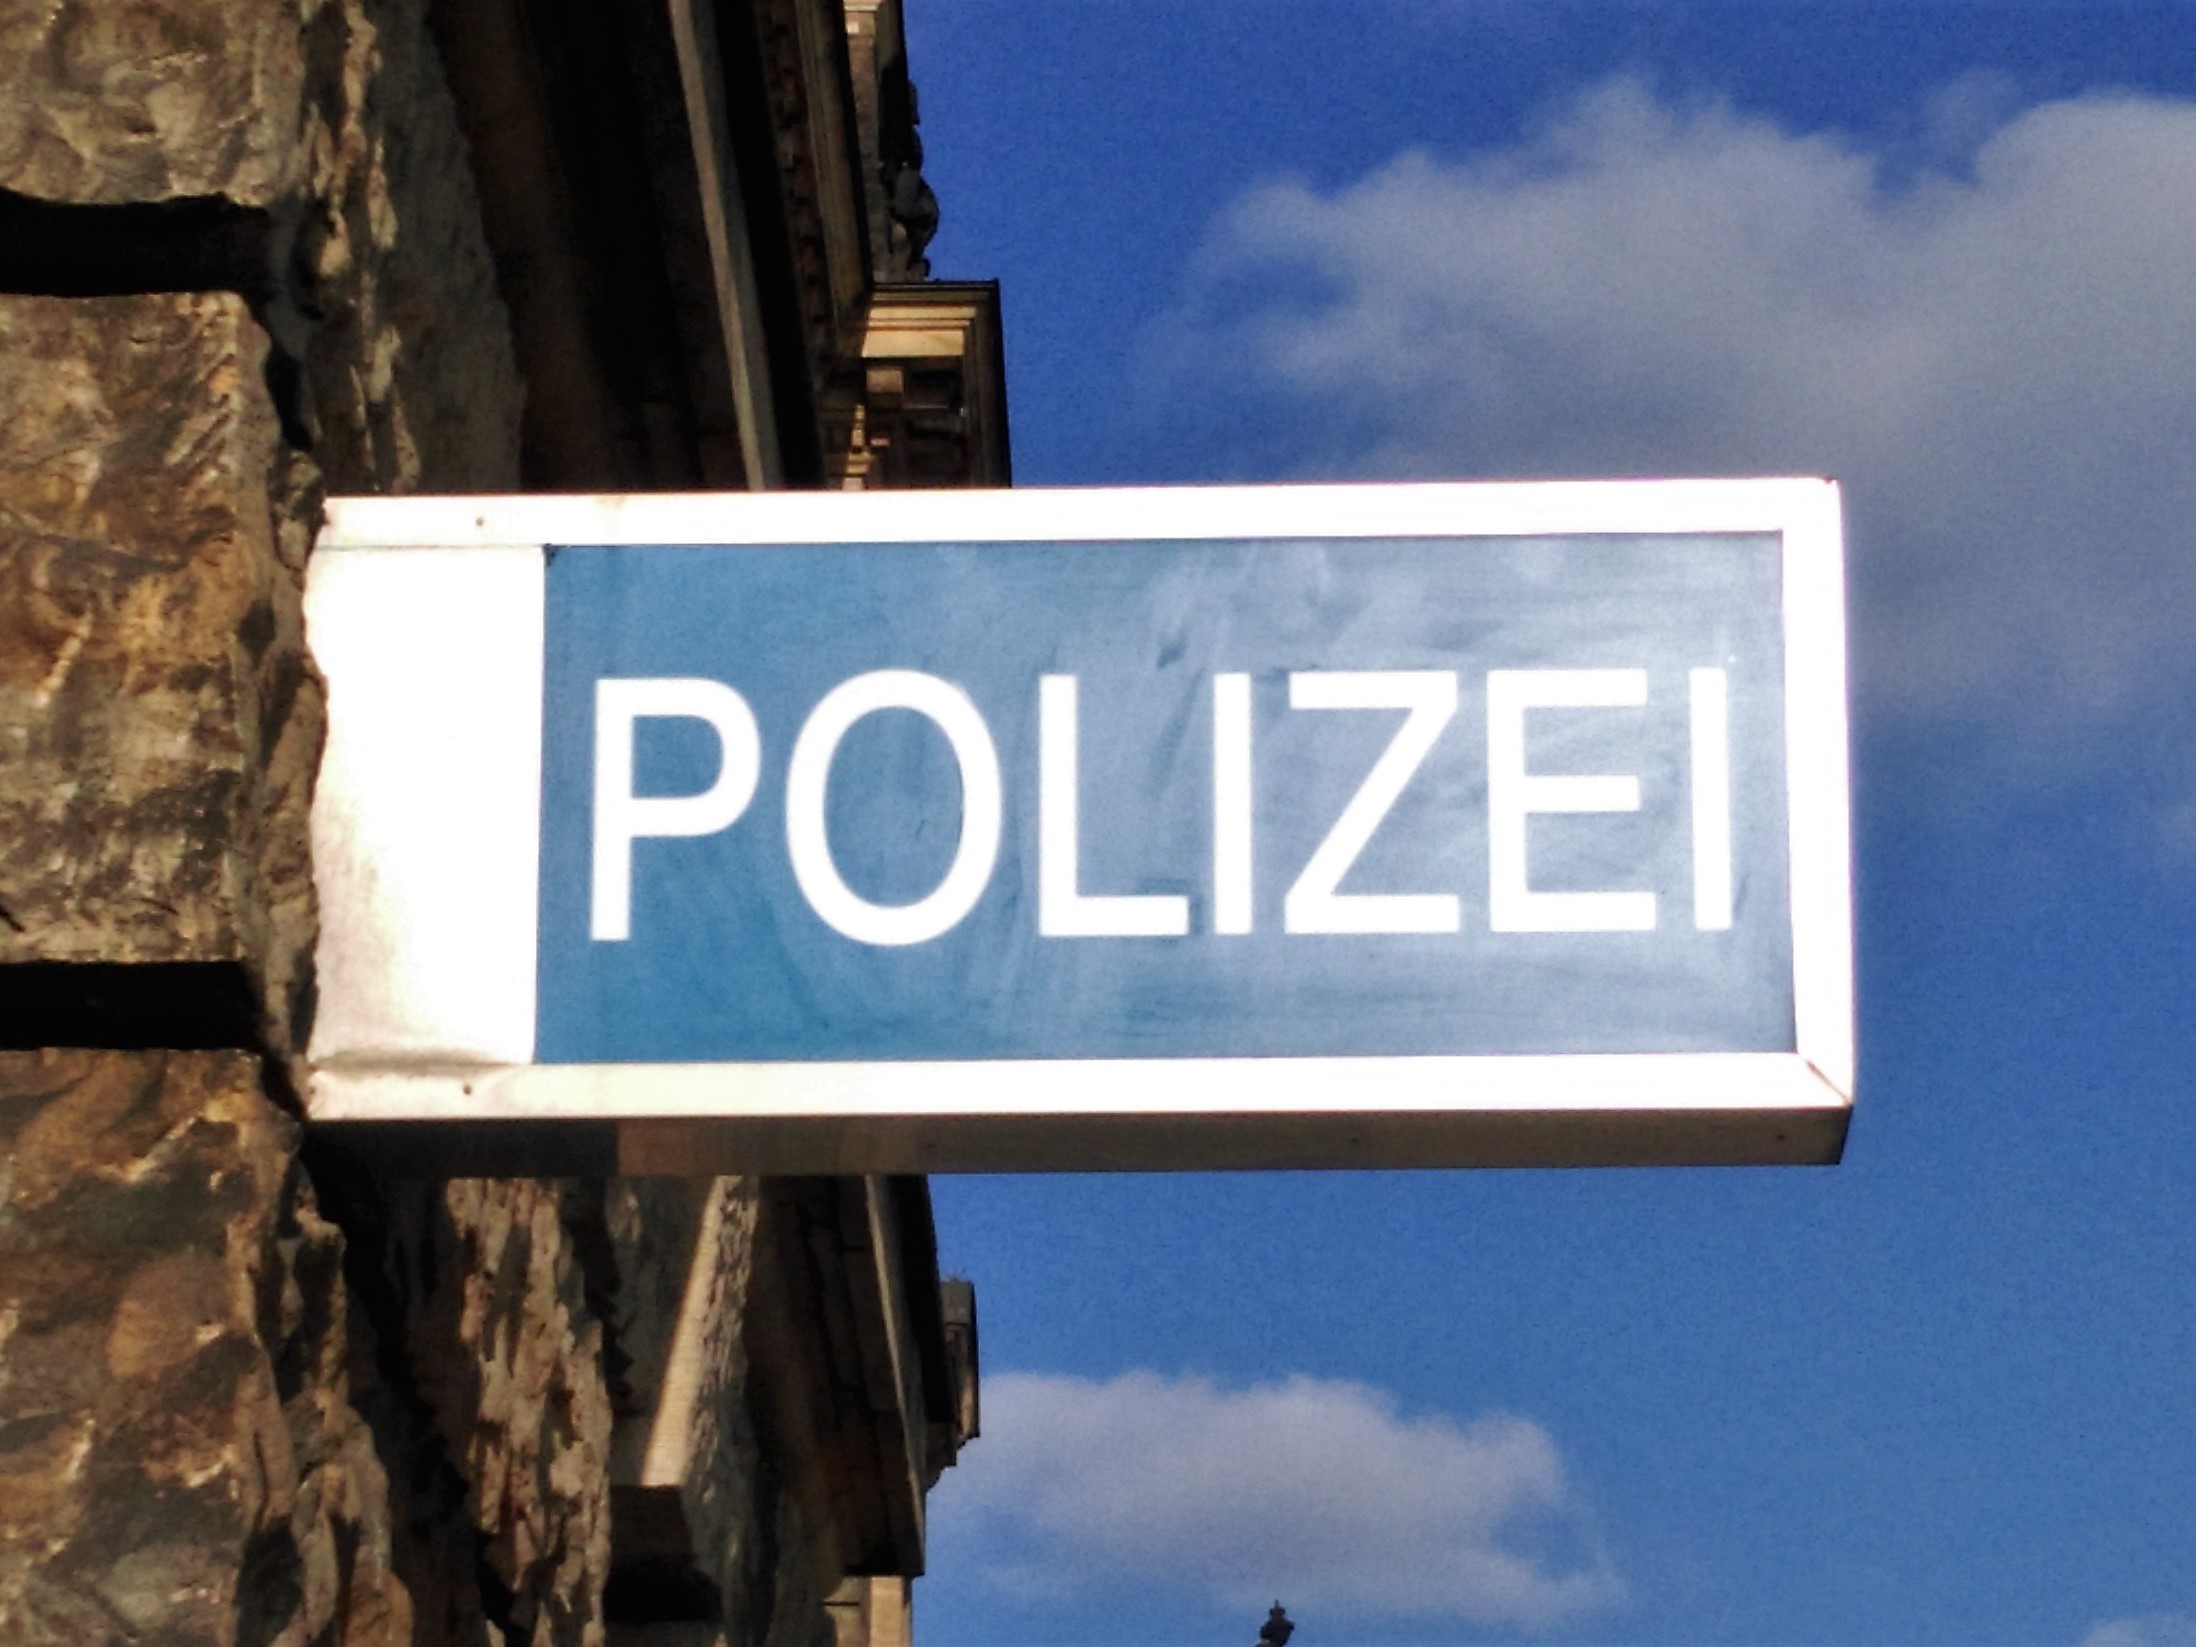 Polizeibeamte im Dienst halten – Vorschlag der AfD zur Änderung des sächsischen Beamtengesetzes hat erhebliche Mängel